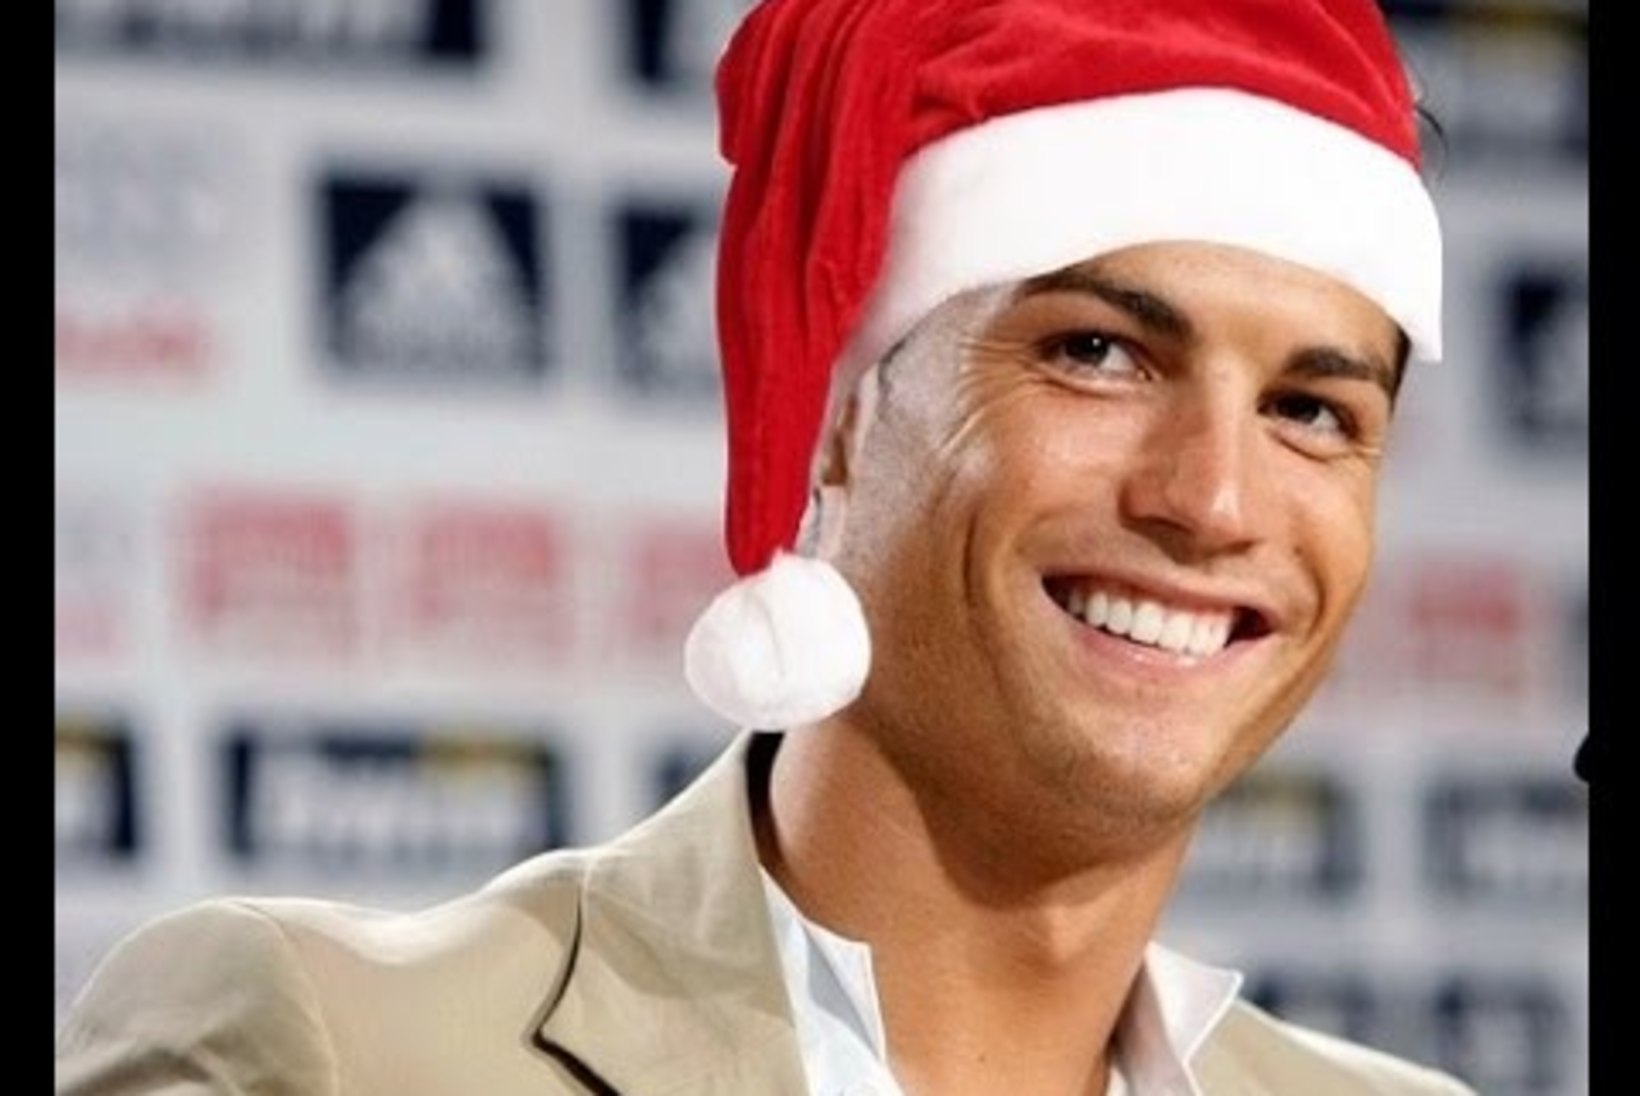 VAHVA JÕULUVIDEO | "Üksinda kodus" uues kuues: kuidas käitub Cristiano Ronaldo, kui ema ta koju unustab?